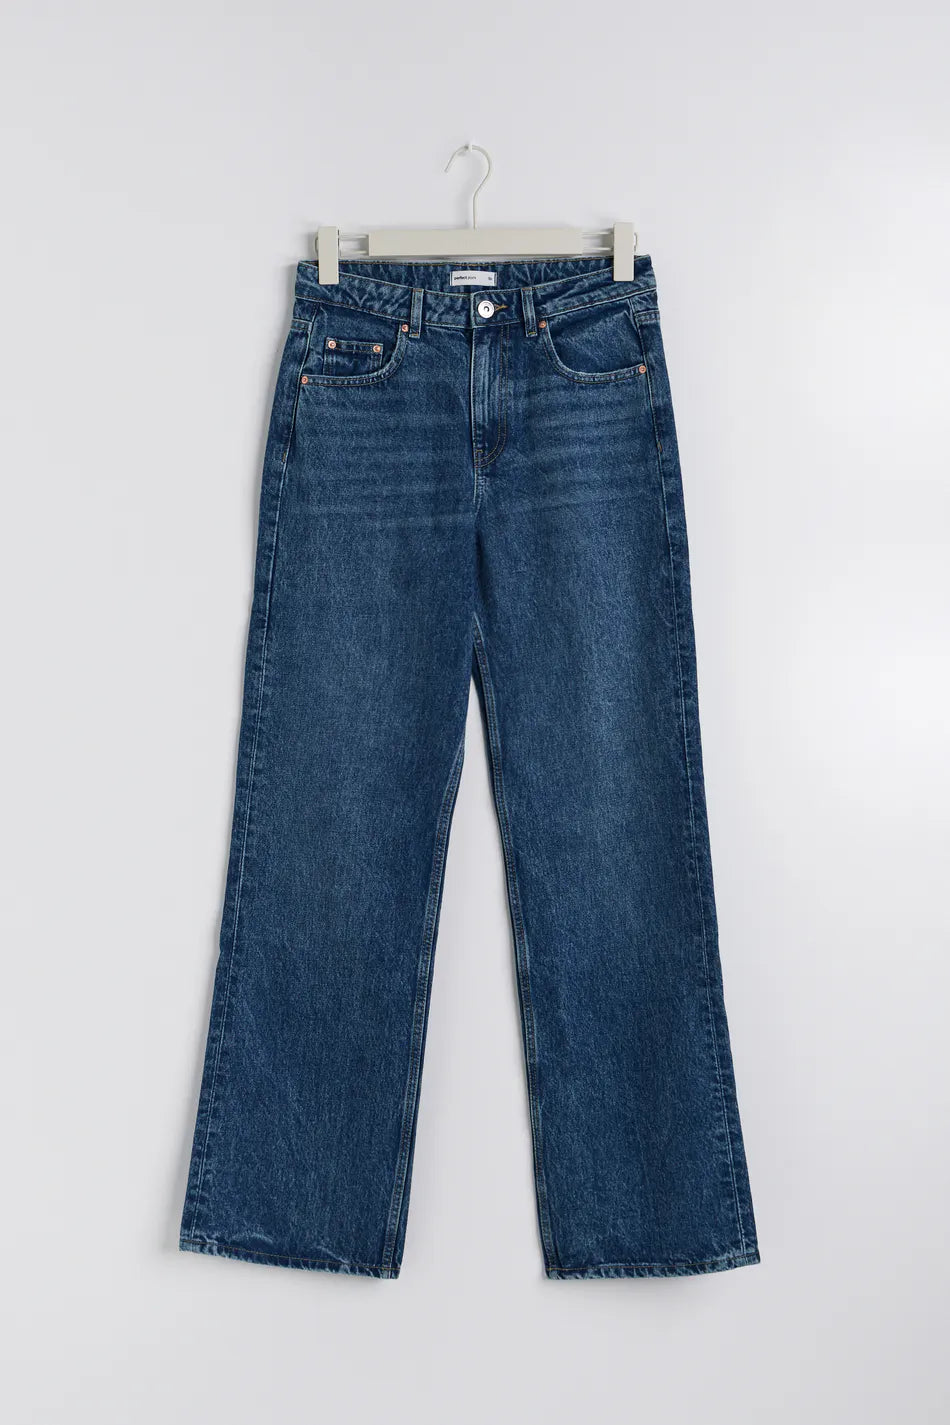 Gina Tricot "90s" high waist jeans blau